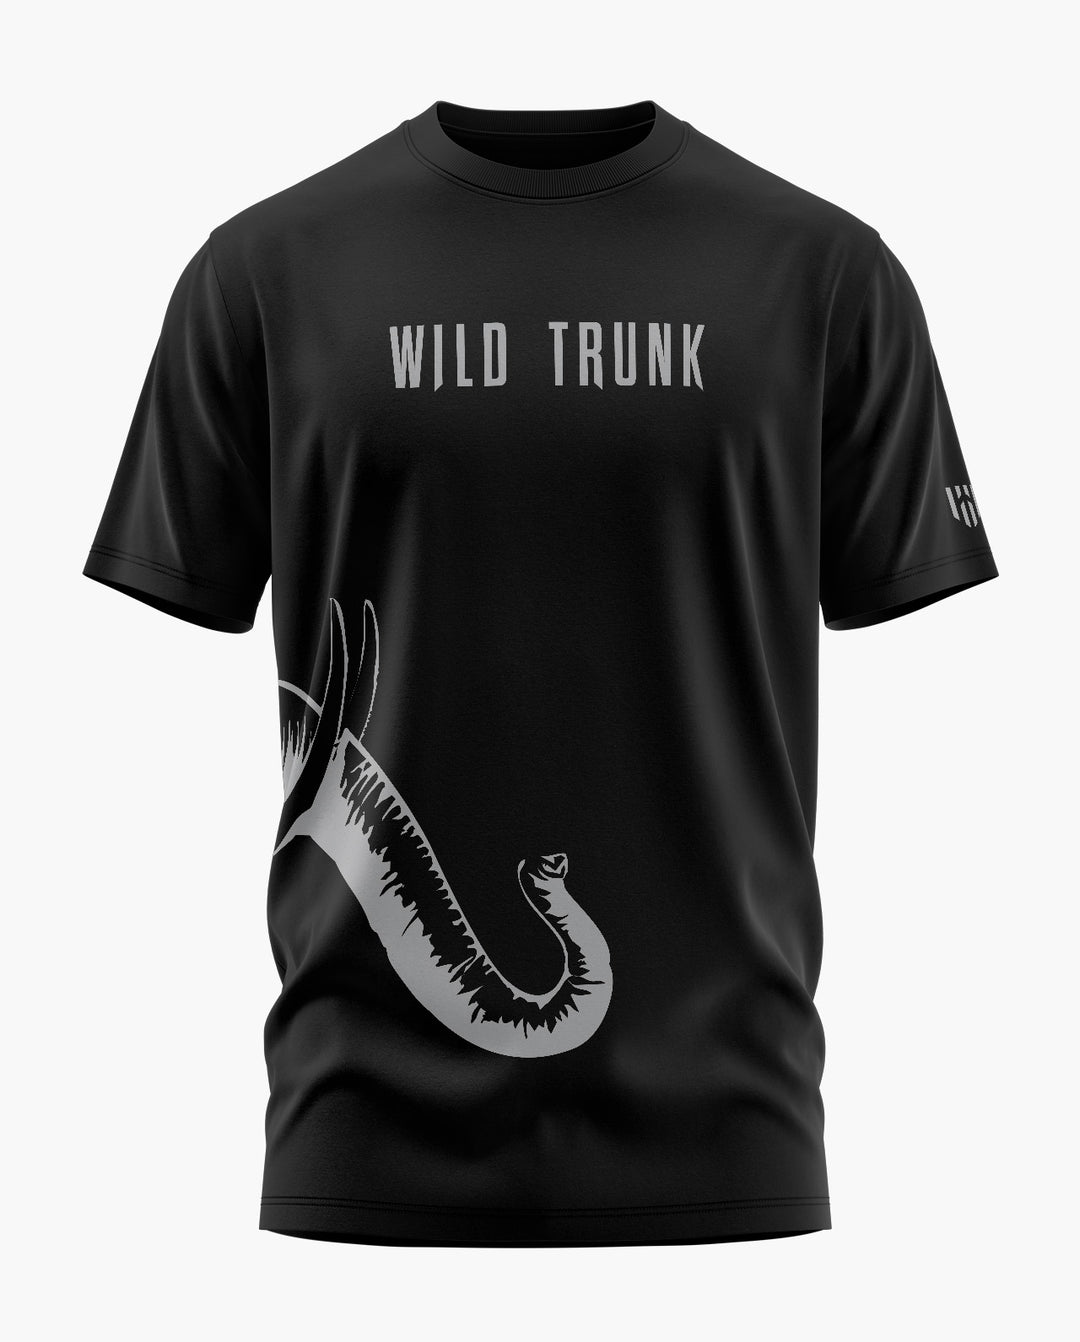 WILD TRUNK T-Shirt